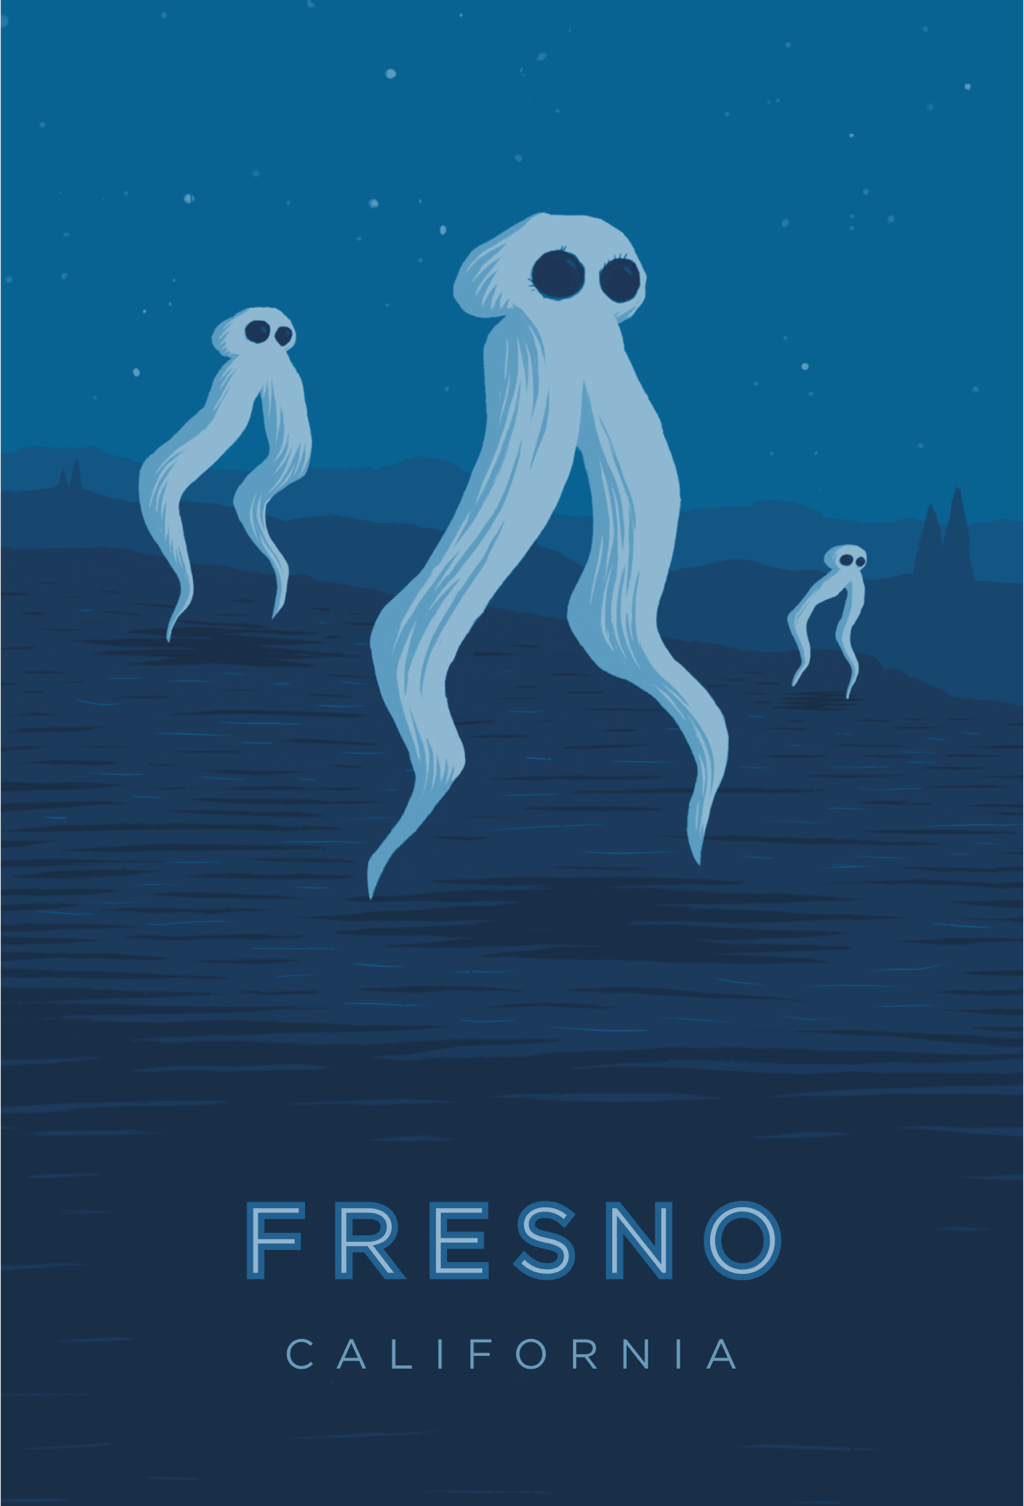 Fresno California travel poster print 6x9